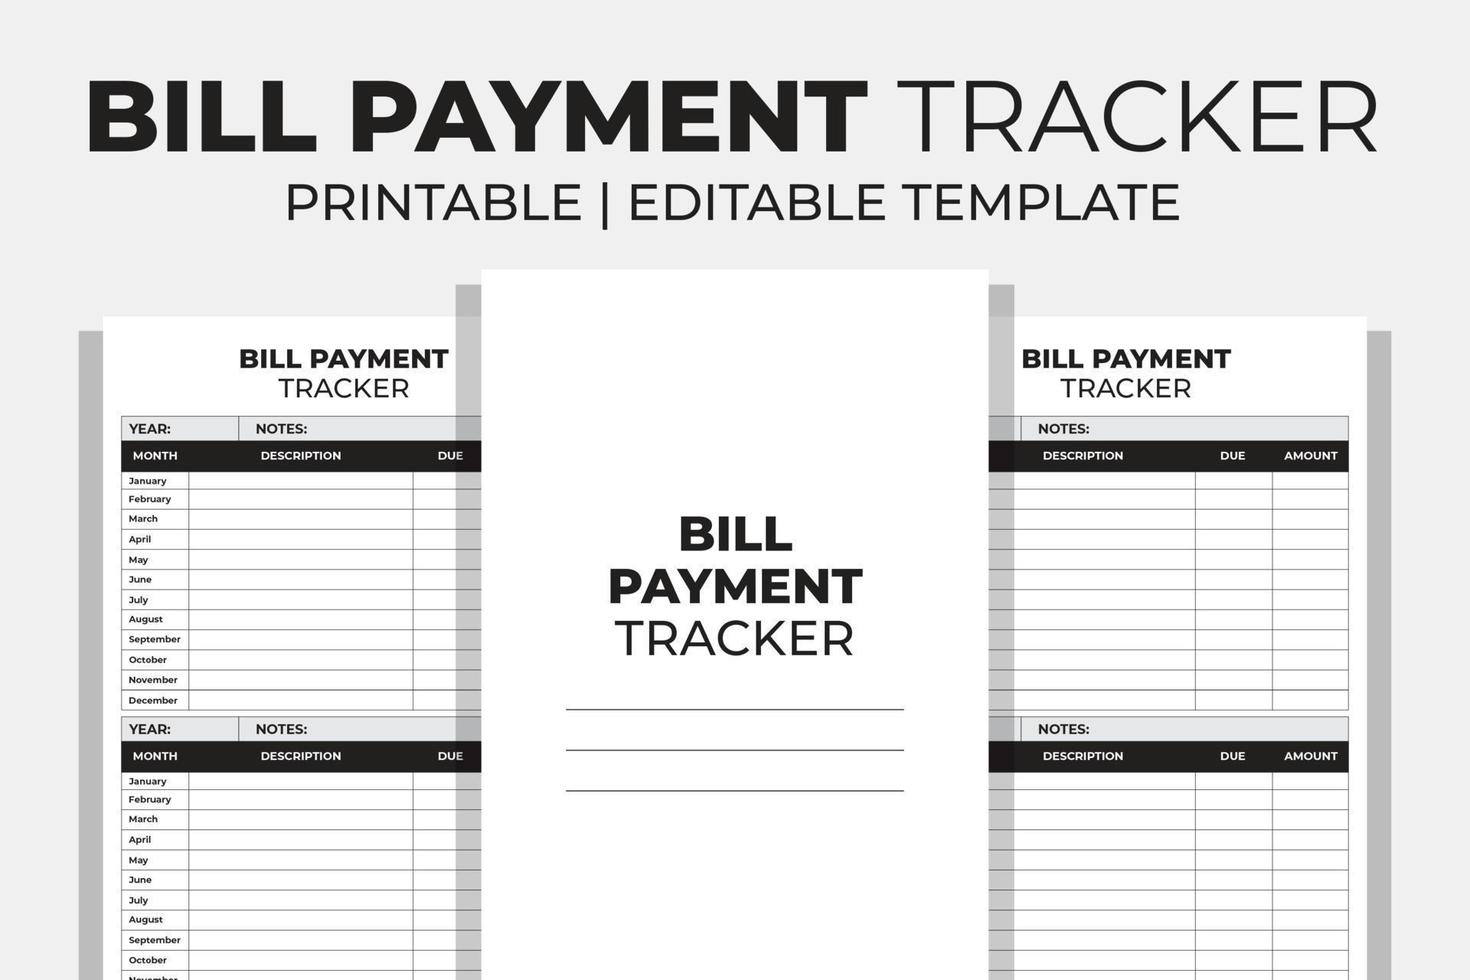 Bill Payment Tracker vector